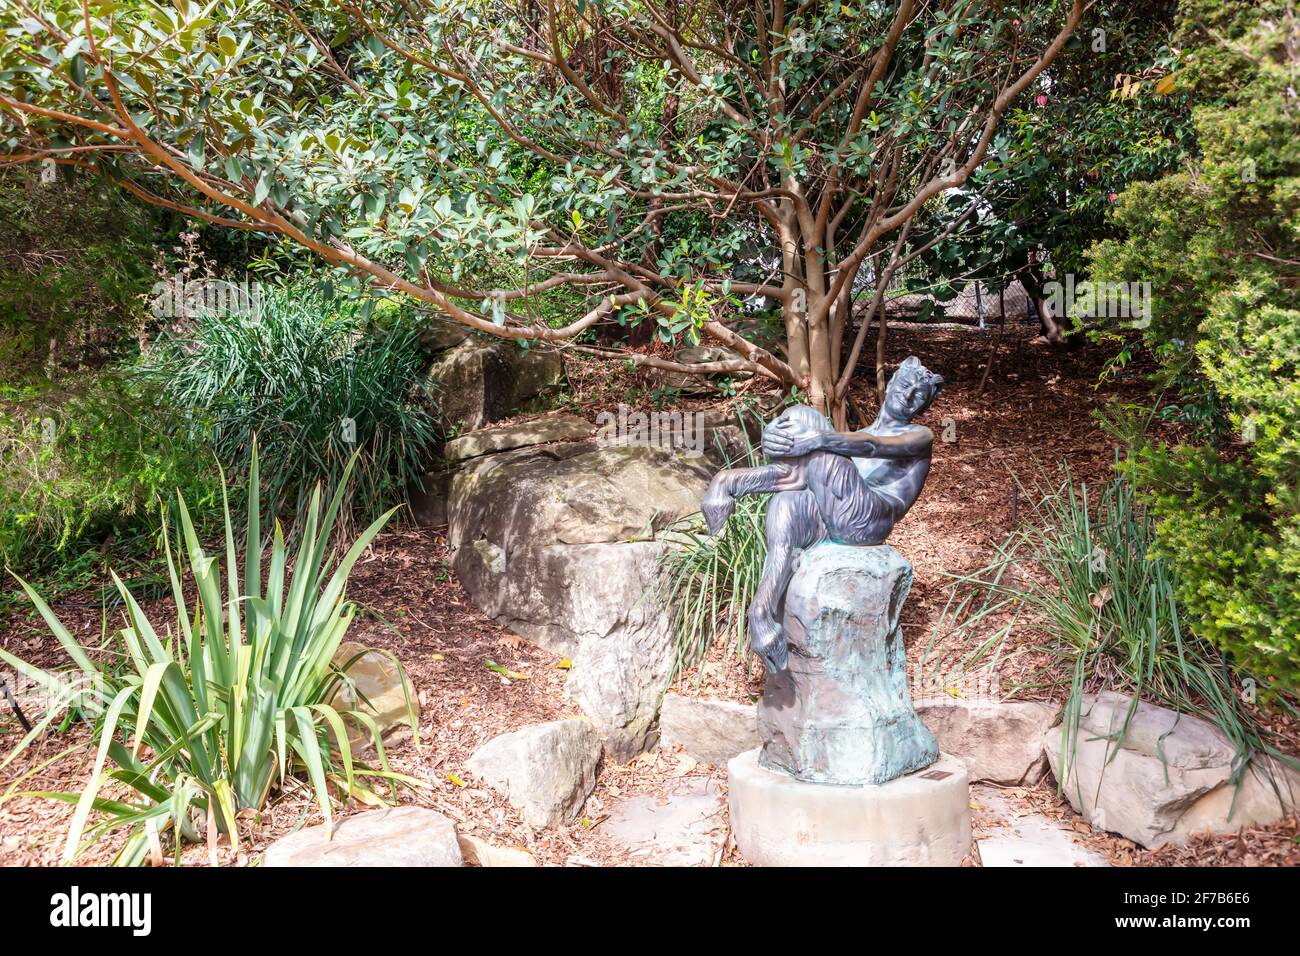 The Satyr, una scultura in bronzo di Frank 'Guy' Lynch situata nei Royal Botanic Gardens nel centro di Sydney, Australia. Foto Stock